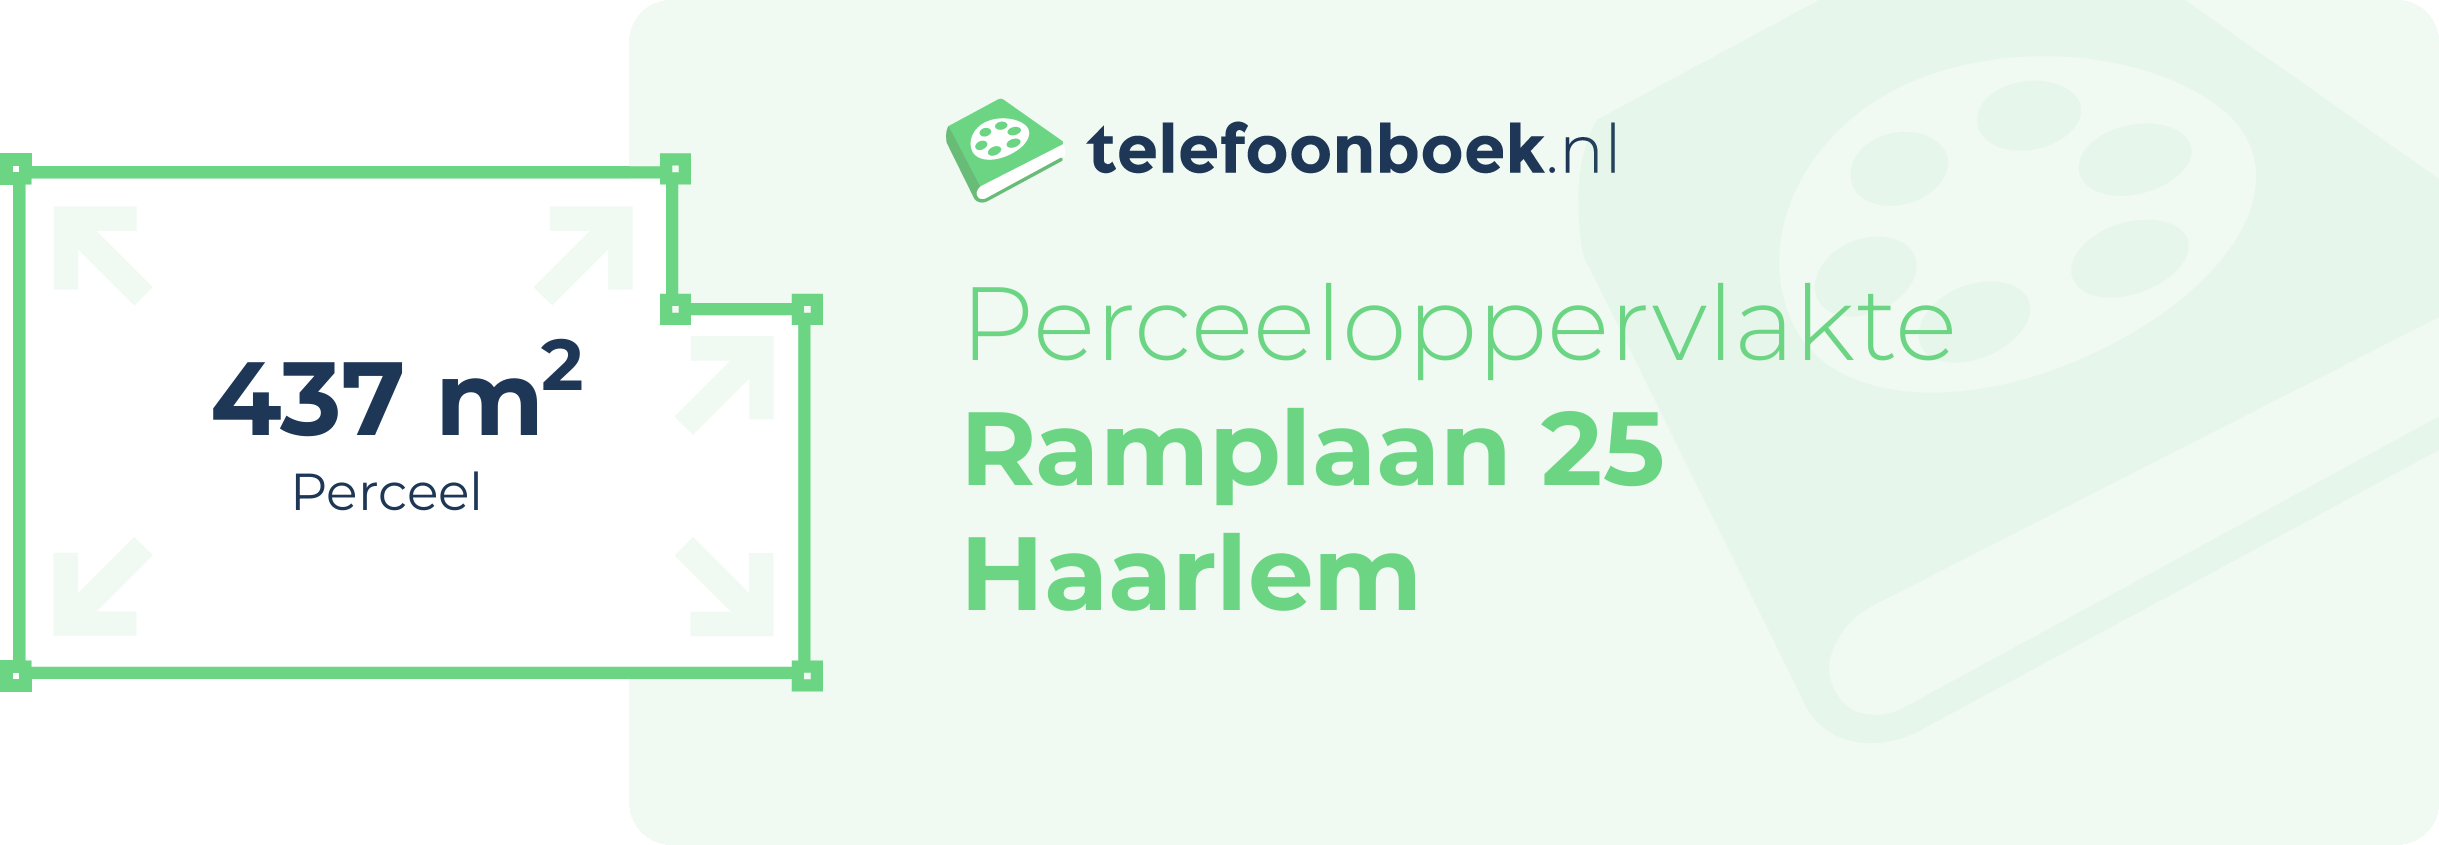 Perceeloppervlakte Ramplaan 25 Haarlem